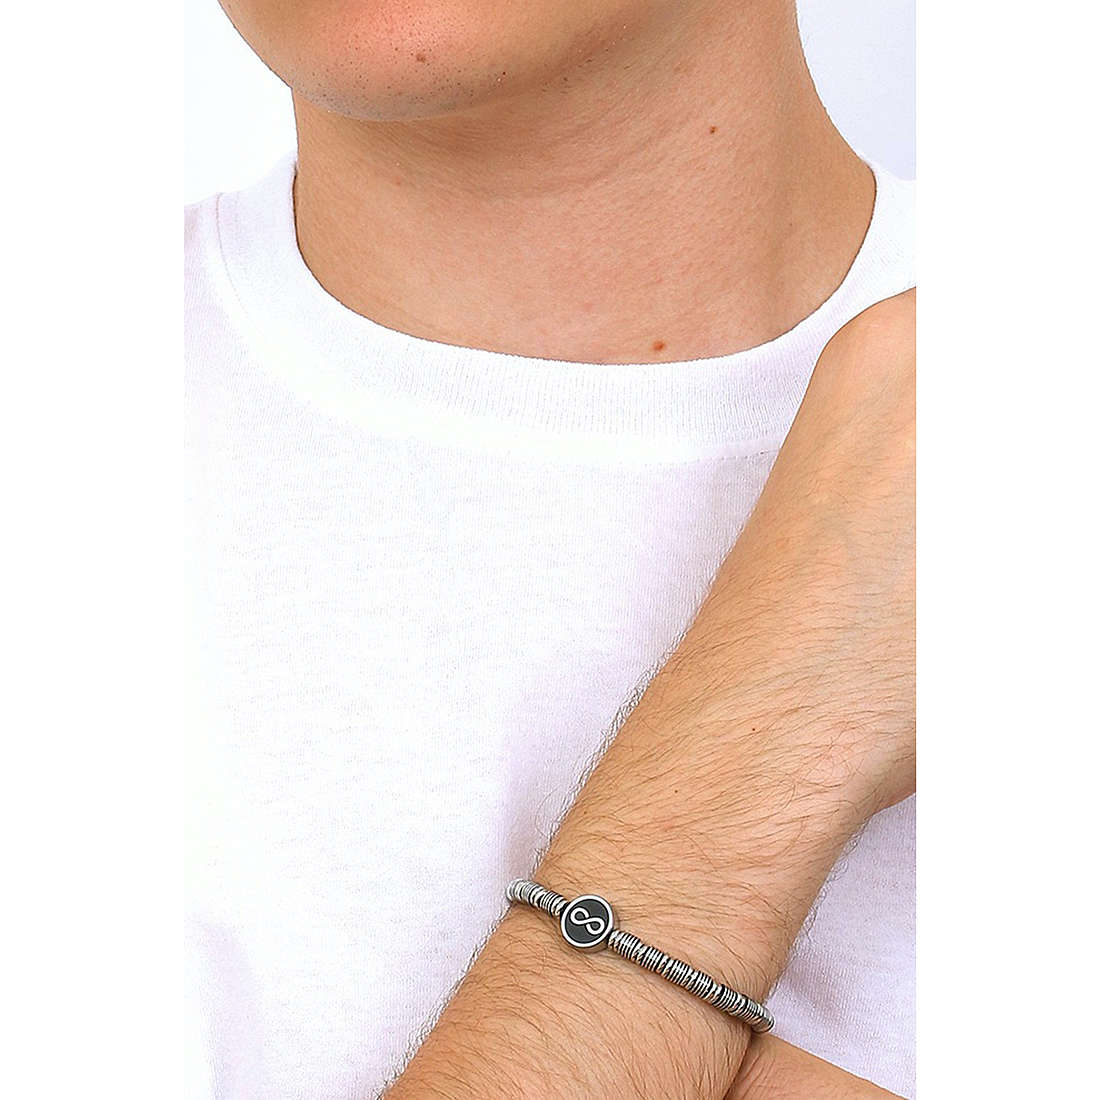 Kidult bracelets Family man 732061 wearing